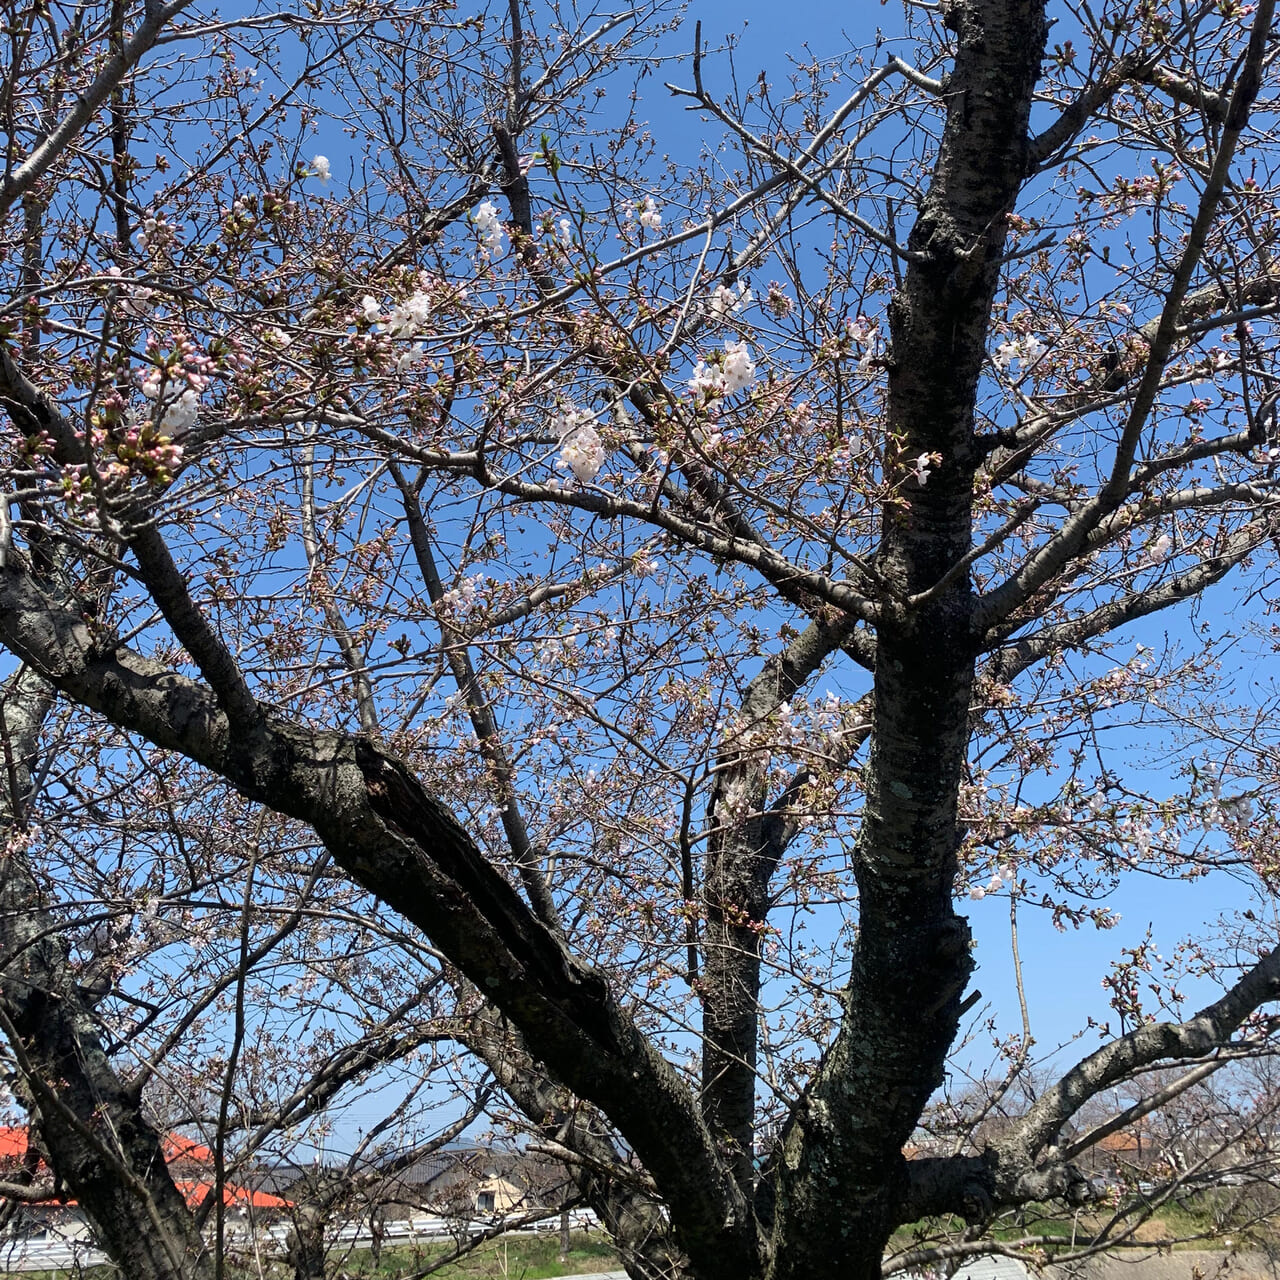 ここ数日の暖かさで桜が急激に開花を始めています!